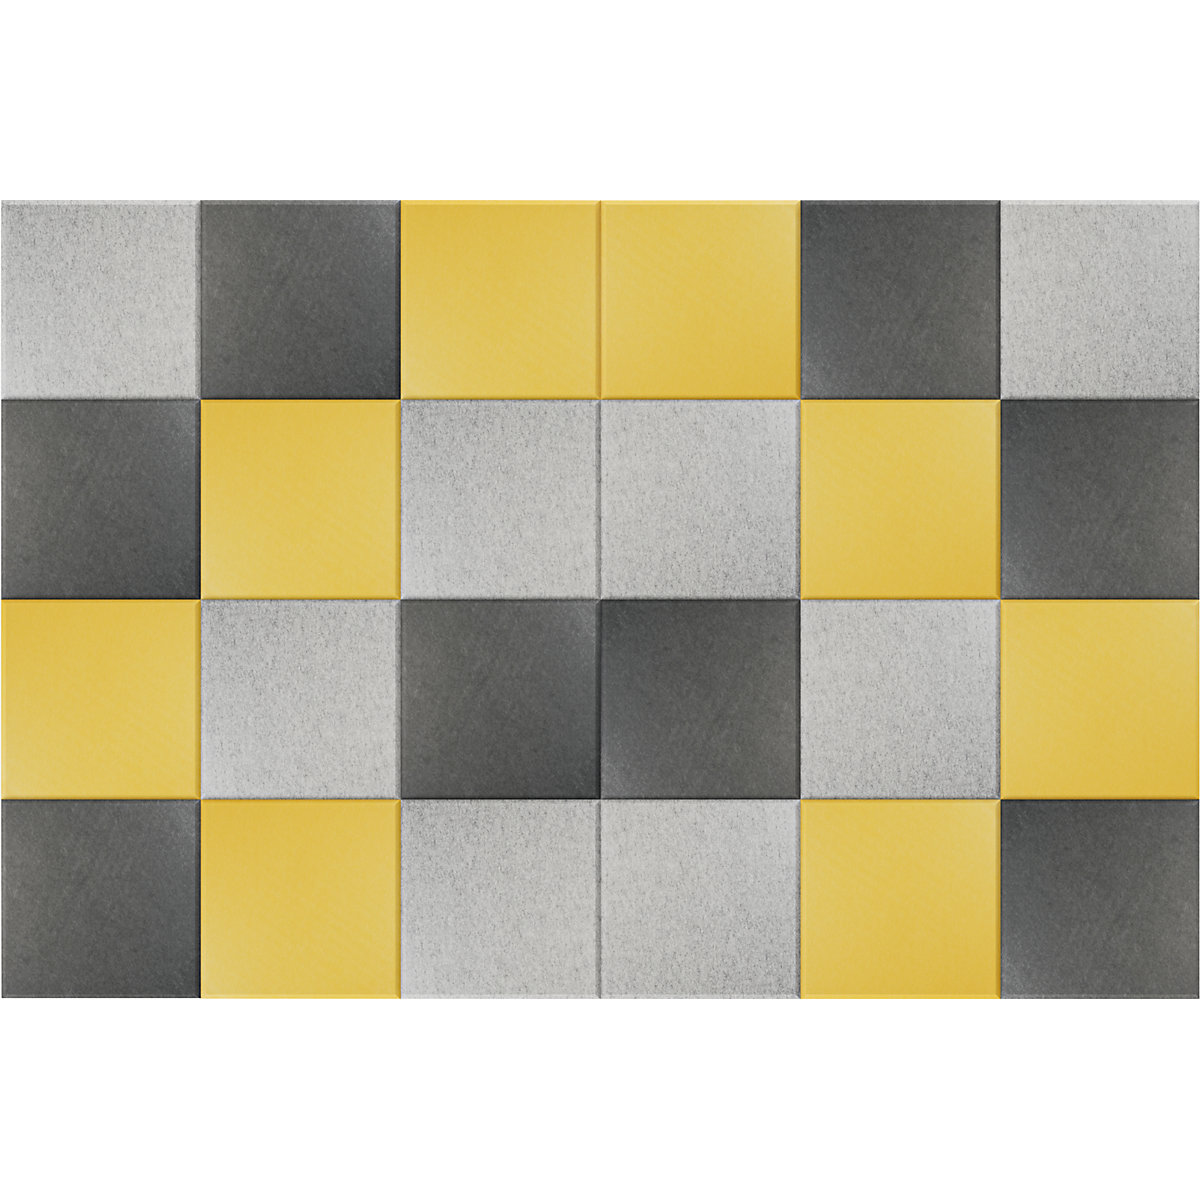 Pannello fonoassorbente da parete – eurokraft basic, alt. x largh. 300 x 300 mm, conf. da 24 pz., 8 per ciascun colore: giallo, grigio chiaro, grigio scuro-8